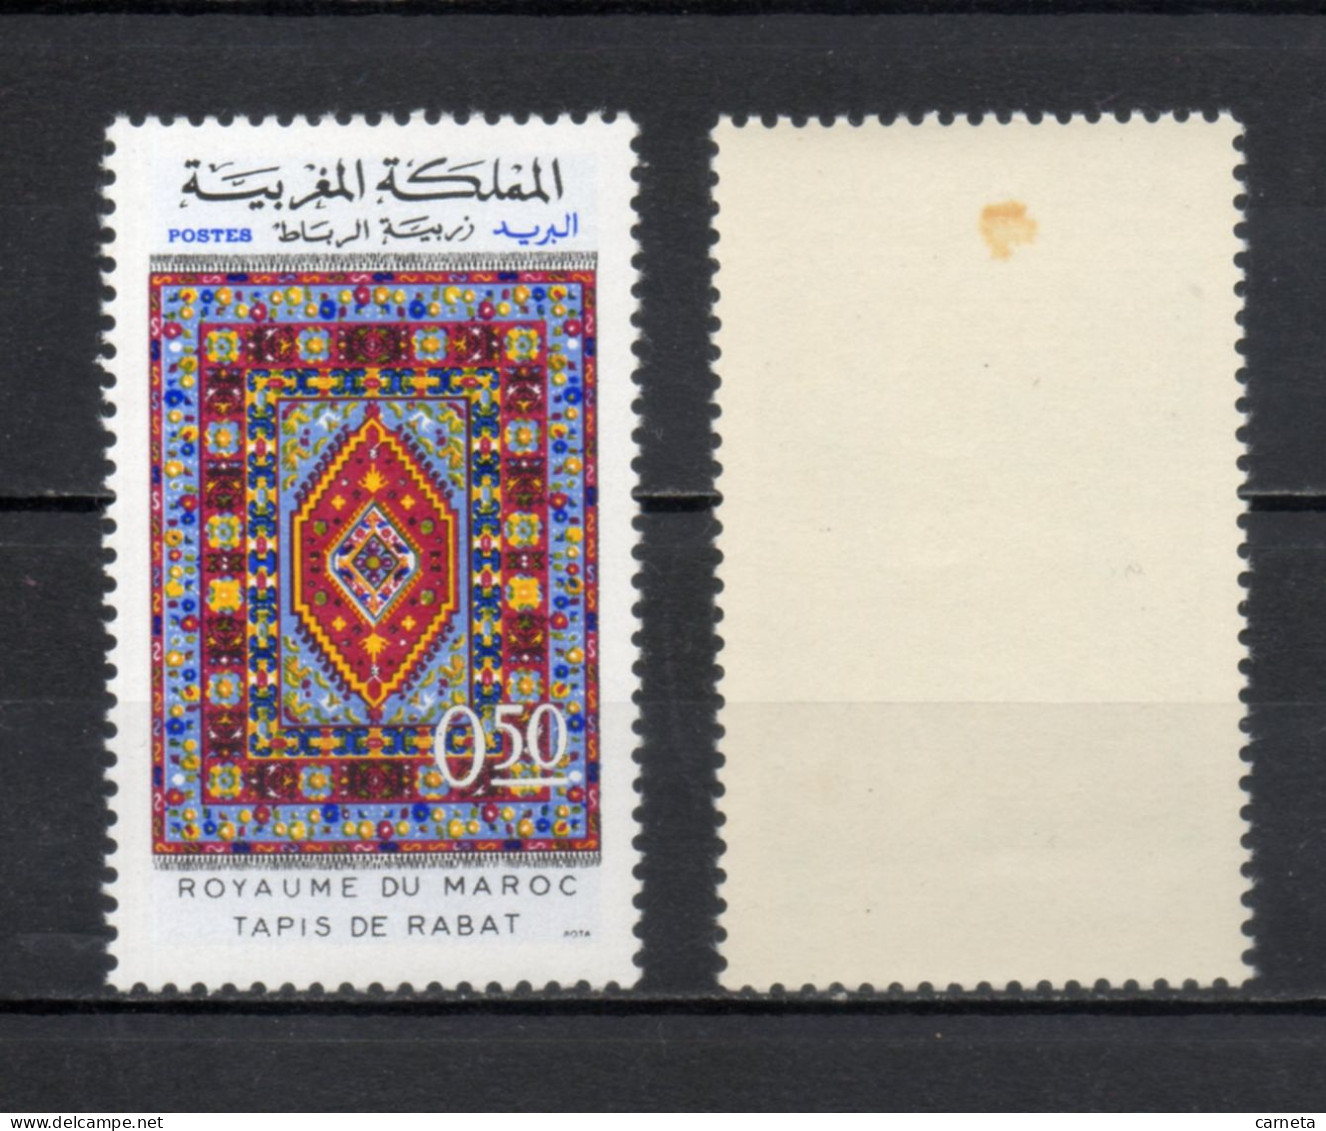 MAROC N°  650 + 651    NEUFS SANS CHARNIERE  COTE 3.50€     ARTISANAT TAPIS - Morocco (1956-...)